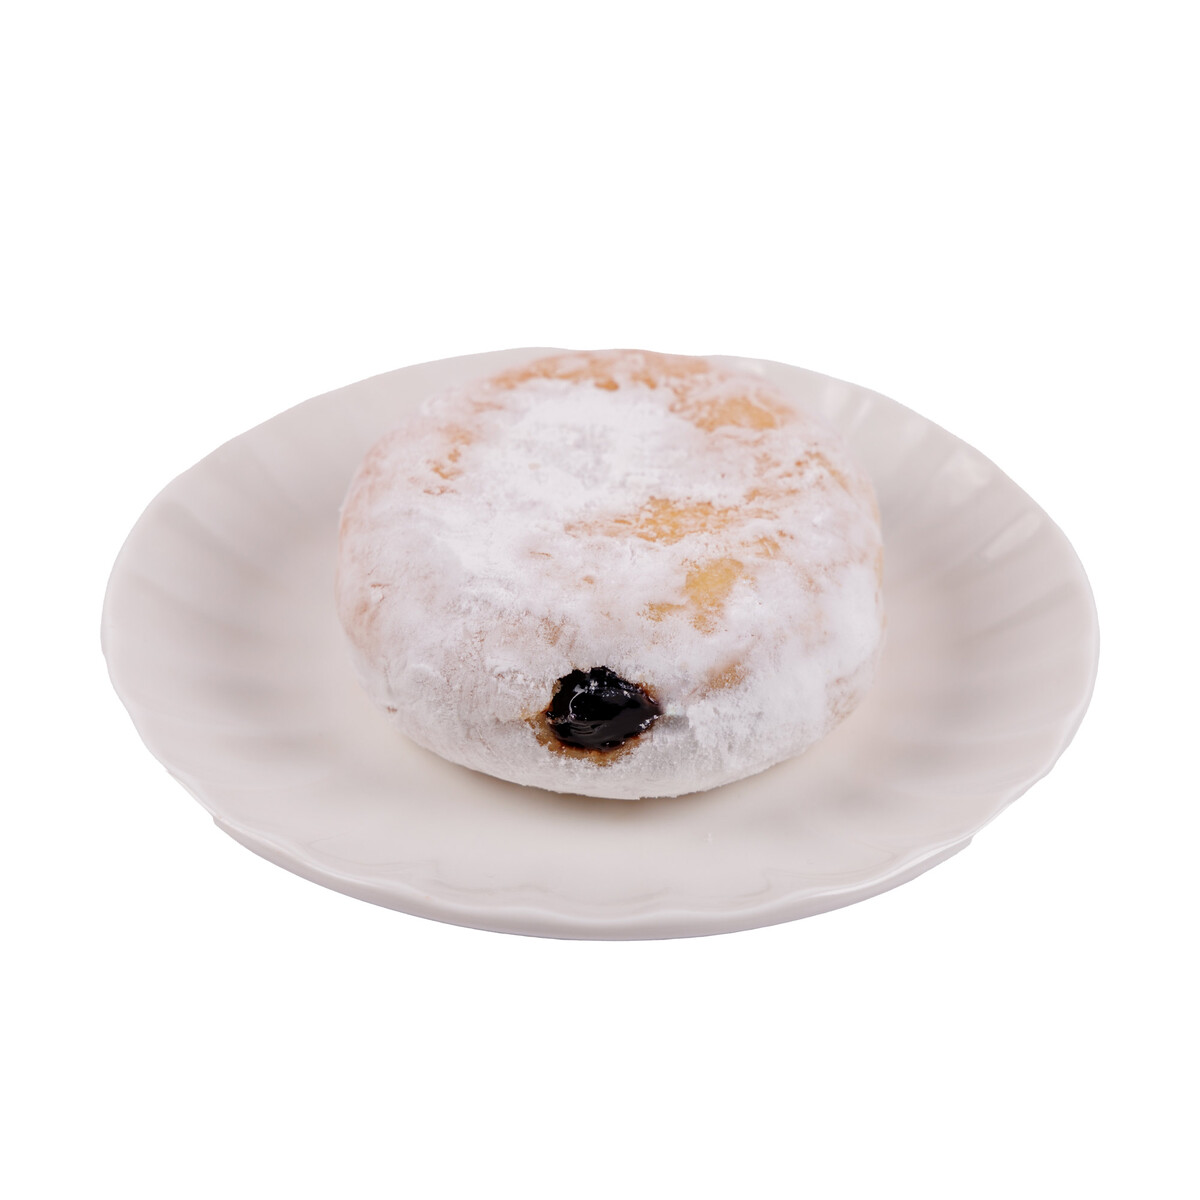 اشتري قم بشراء دونات محشو بالشكولاتة 1 قطعة Online at Best Price من الموقع - من لولو هايبر ماركت Doughnuts في الامارات